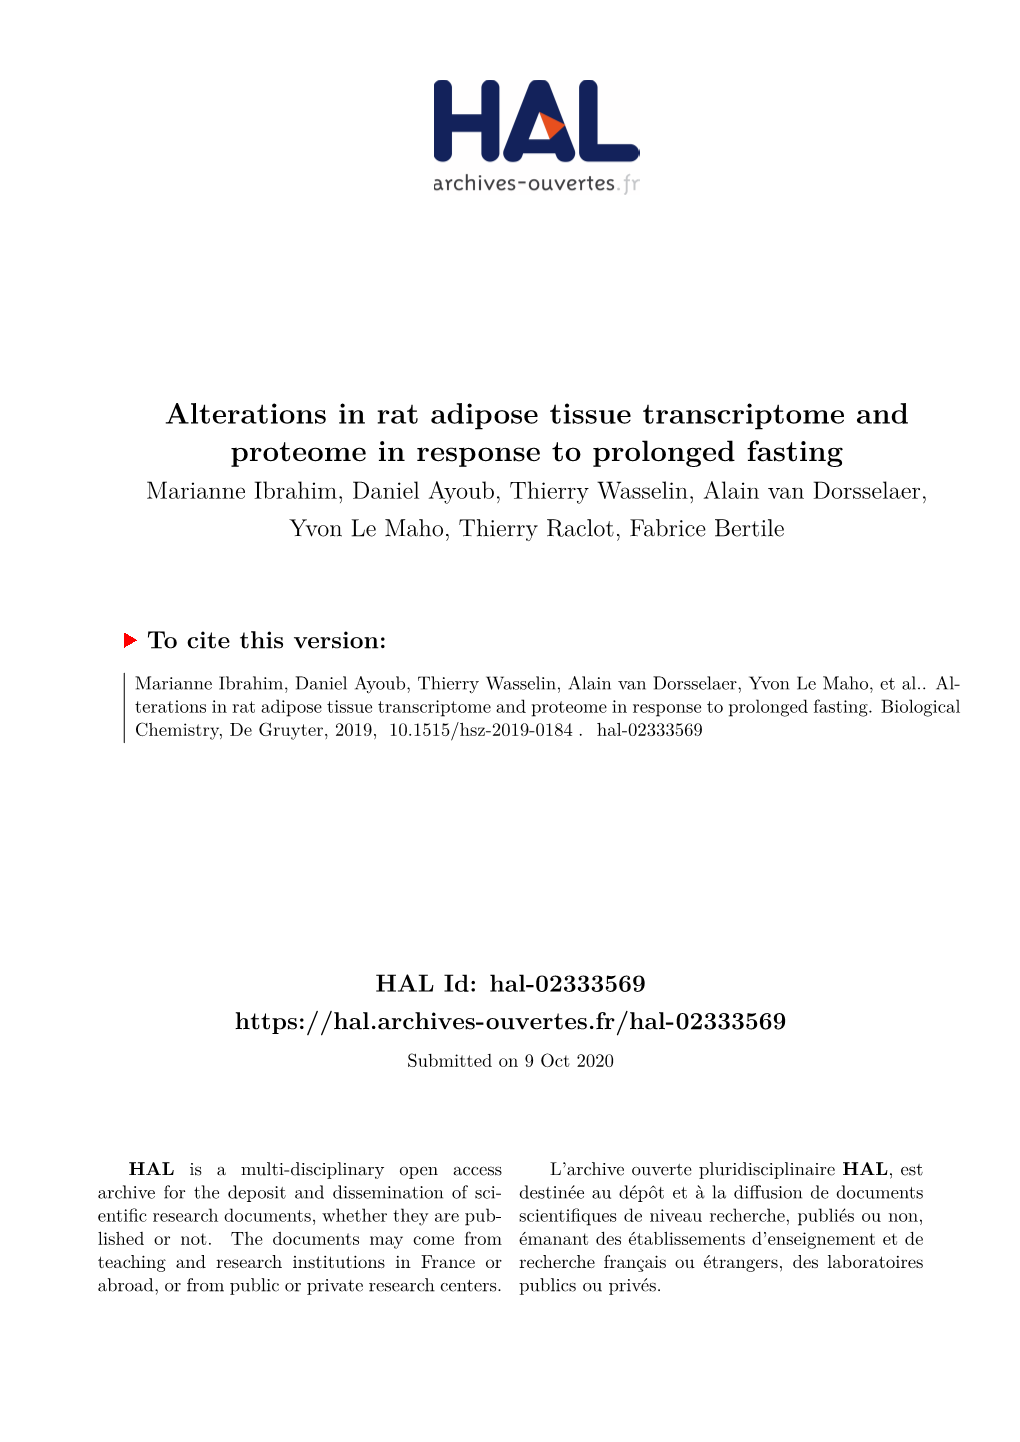 Alterations in Rat Adipose Tissue Transcriptome and Proteome In